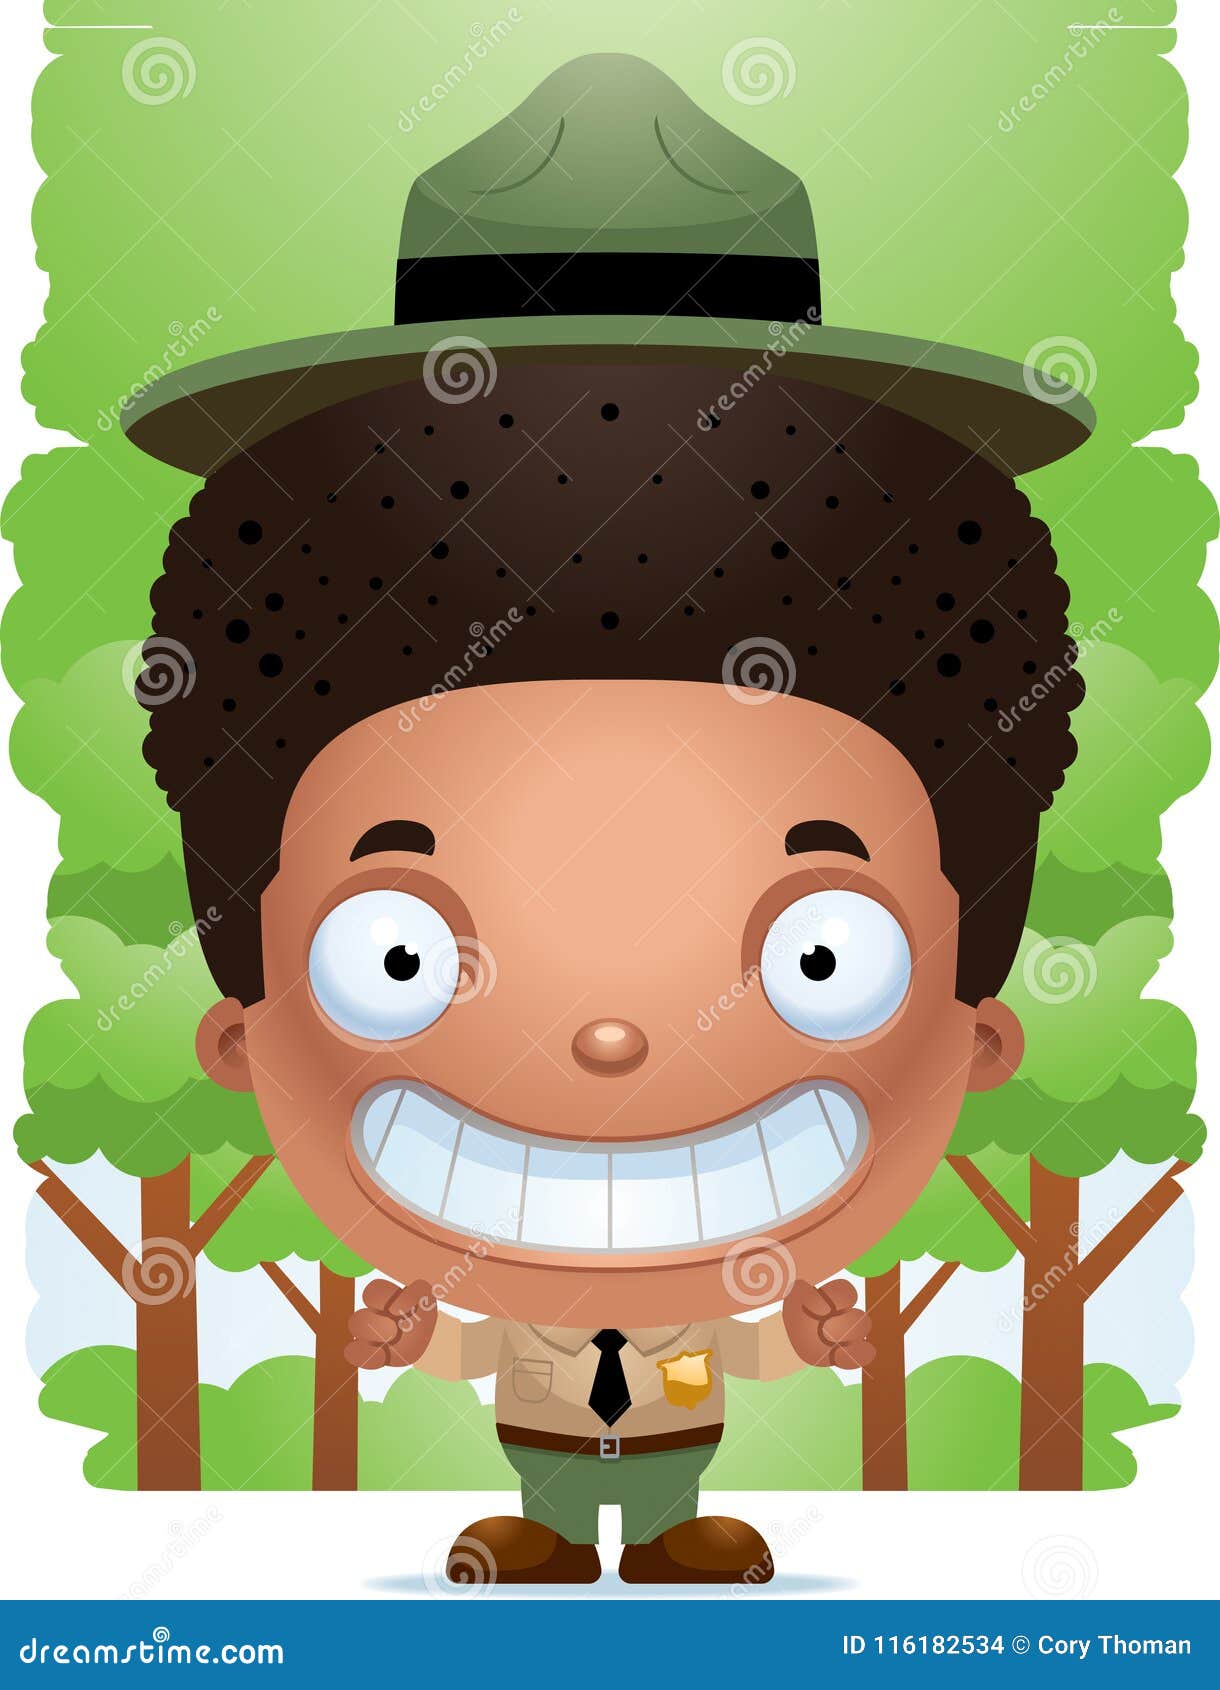 Smiling Cartoon Boy Park Ranger Stock Vector - Illustration of smiling, cartoon: 116182534